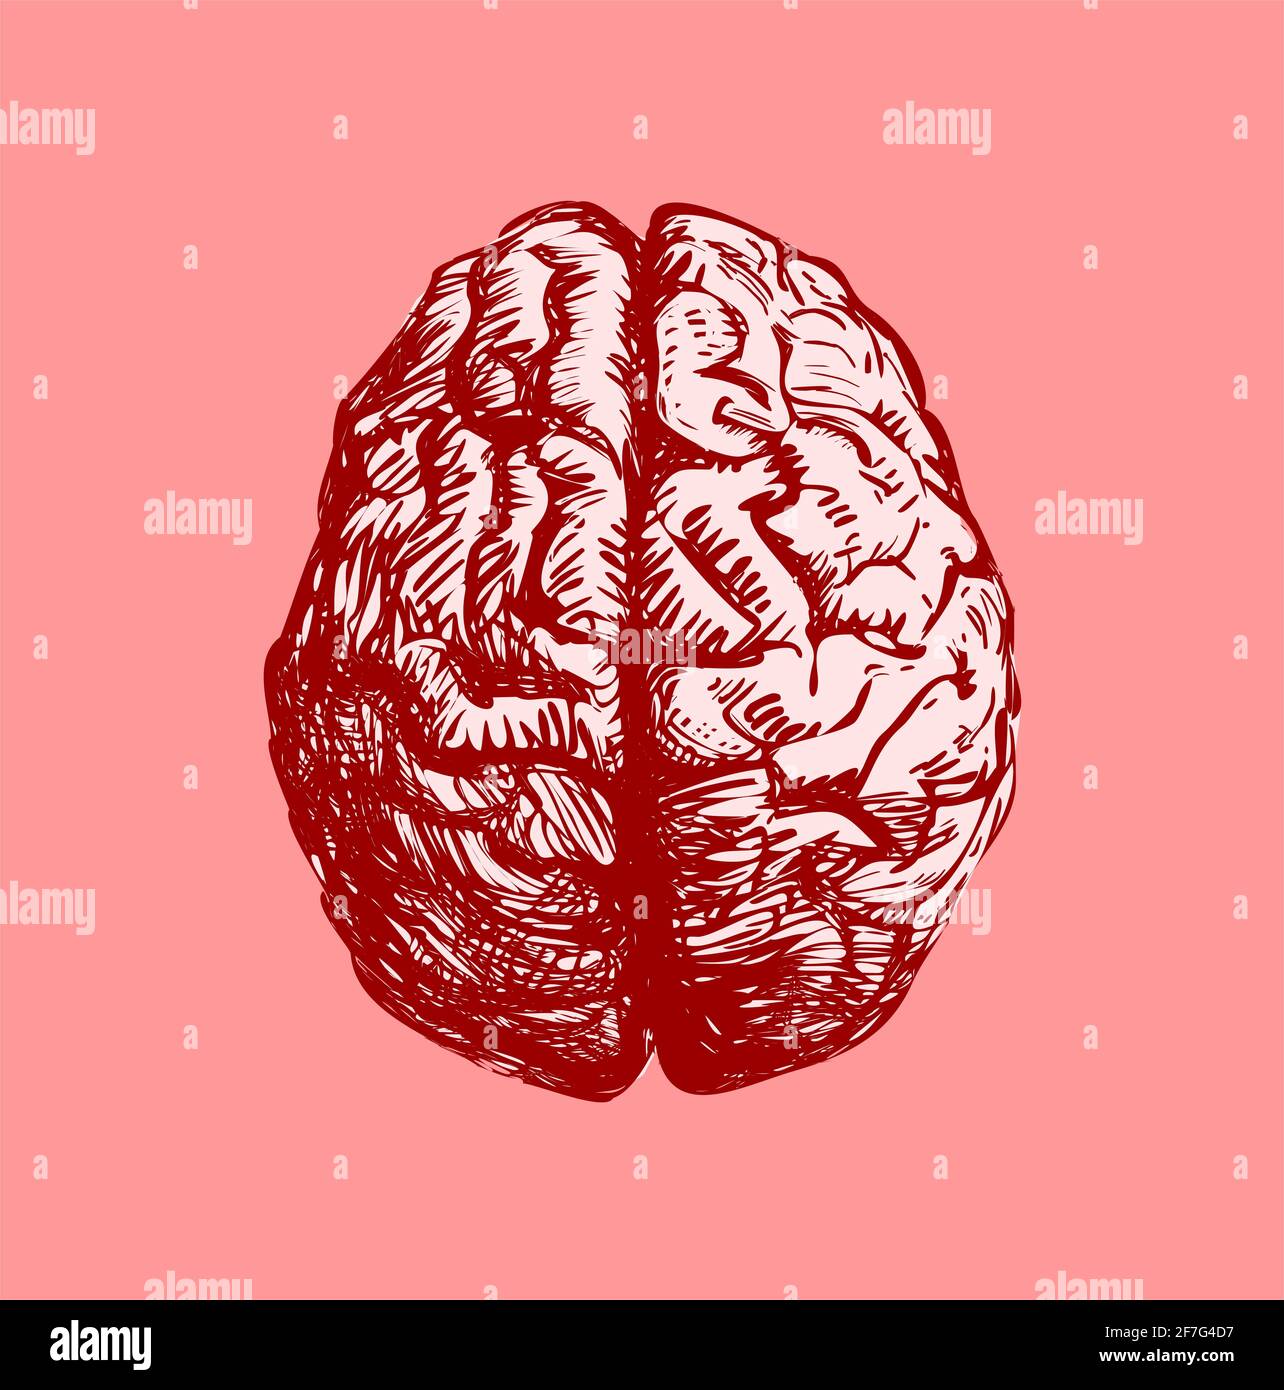 Illustration of human brain Stock Photo